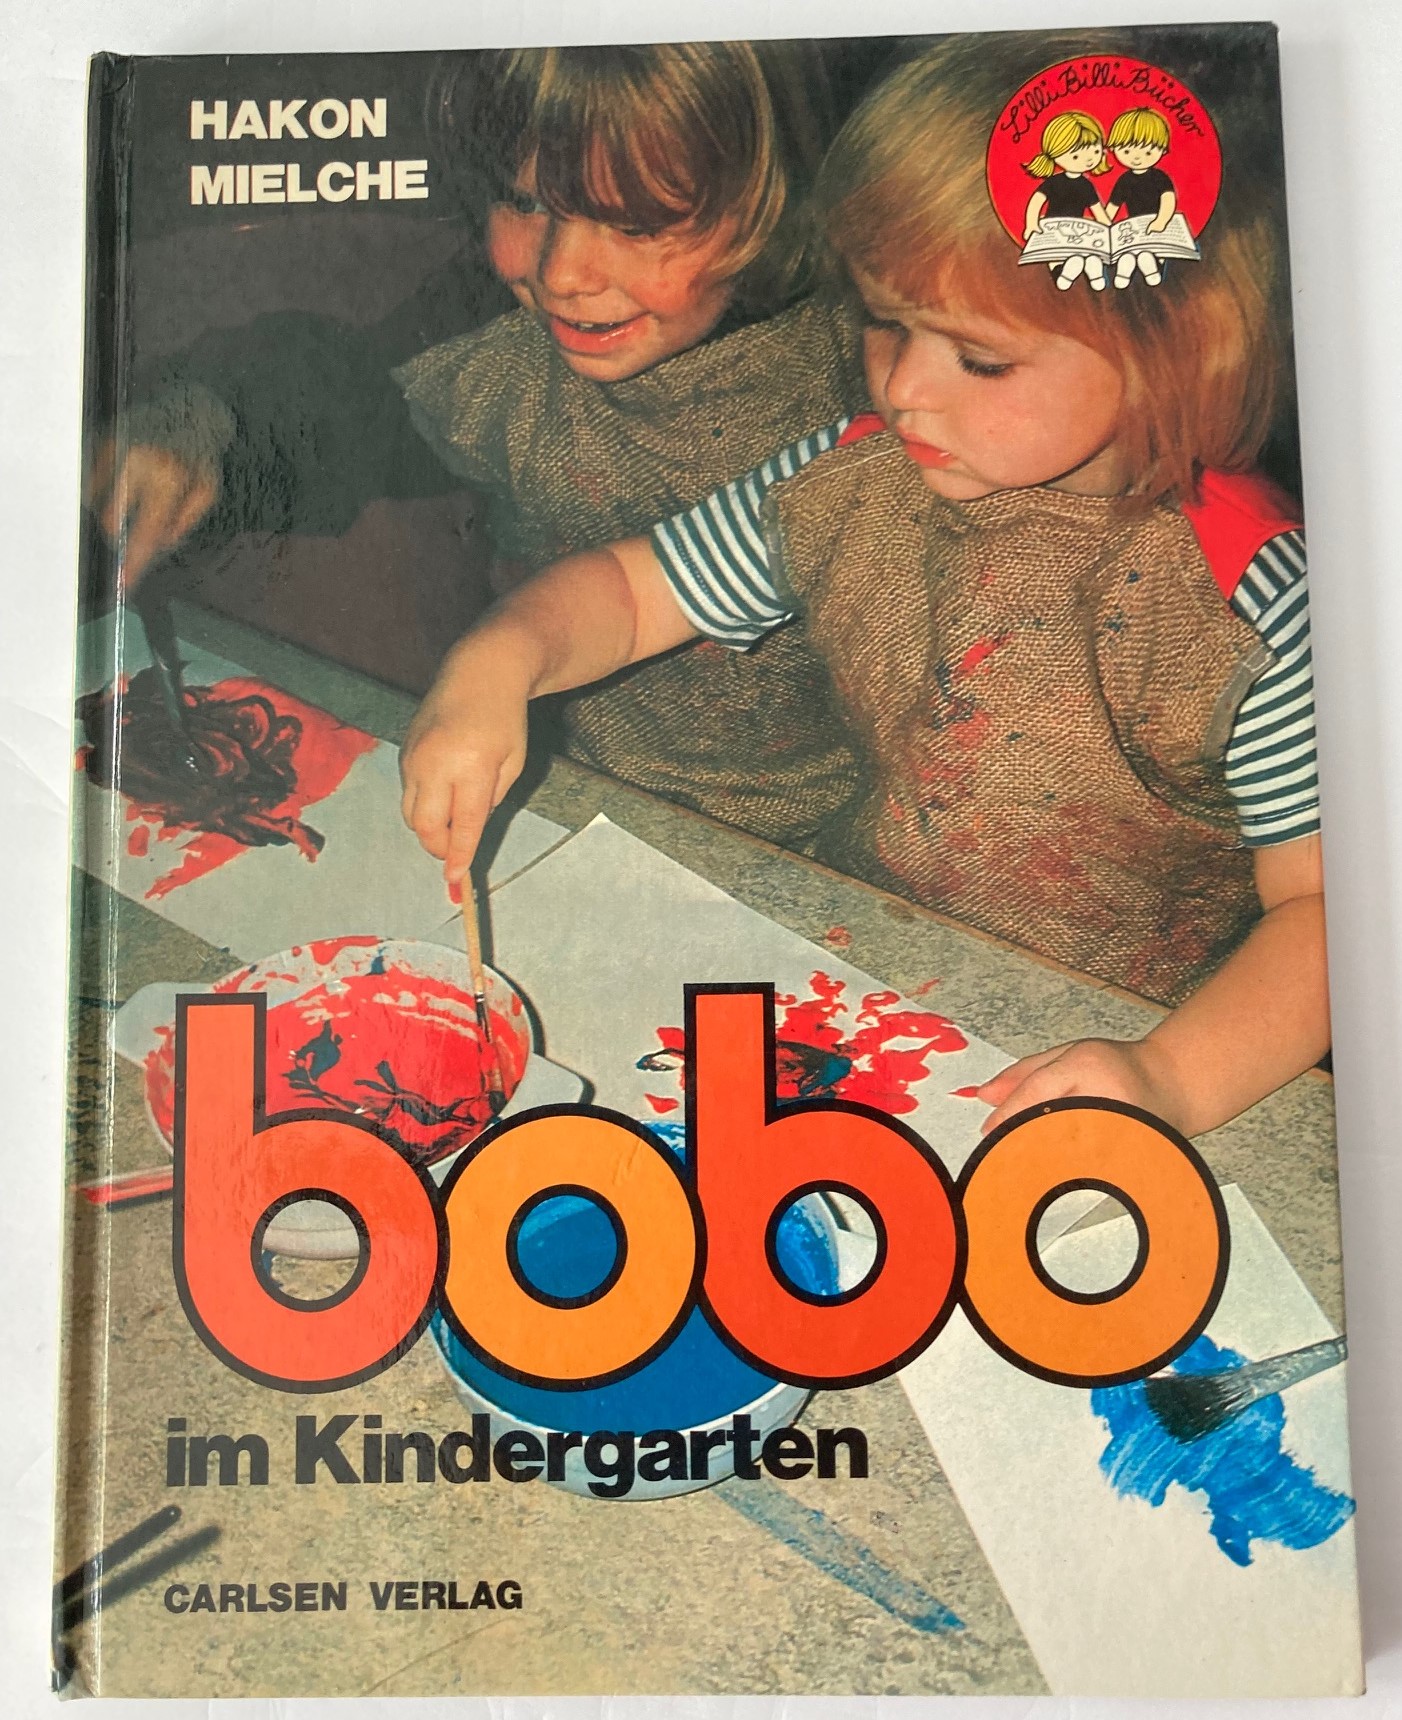 Mielche, Hakon/Pirck, Elke  Bobo im Kindergarten (LilliBilliBücher) 